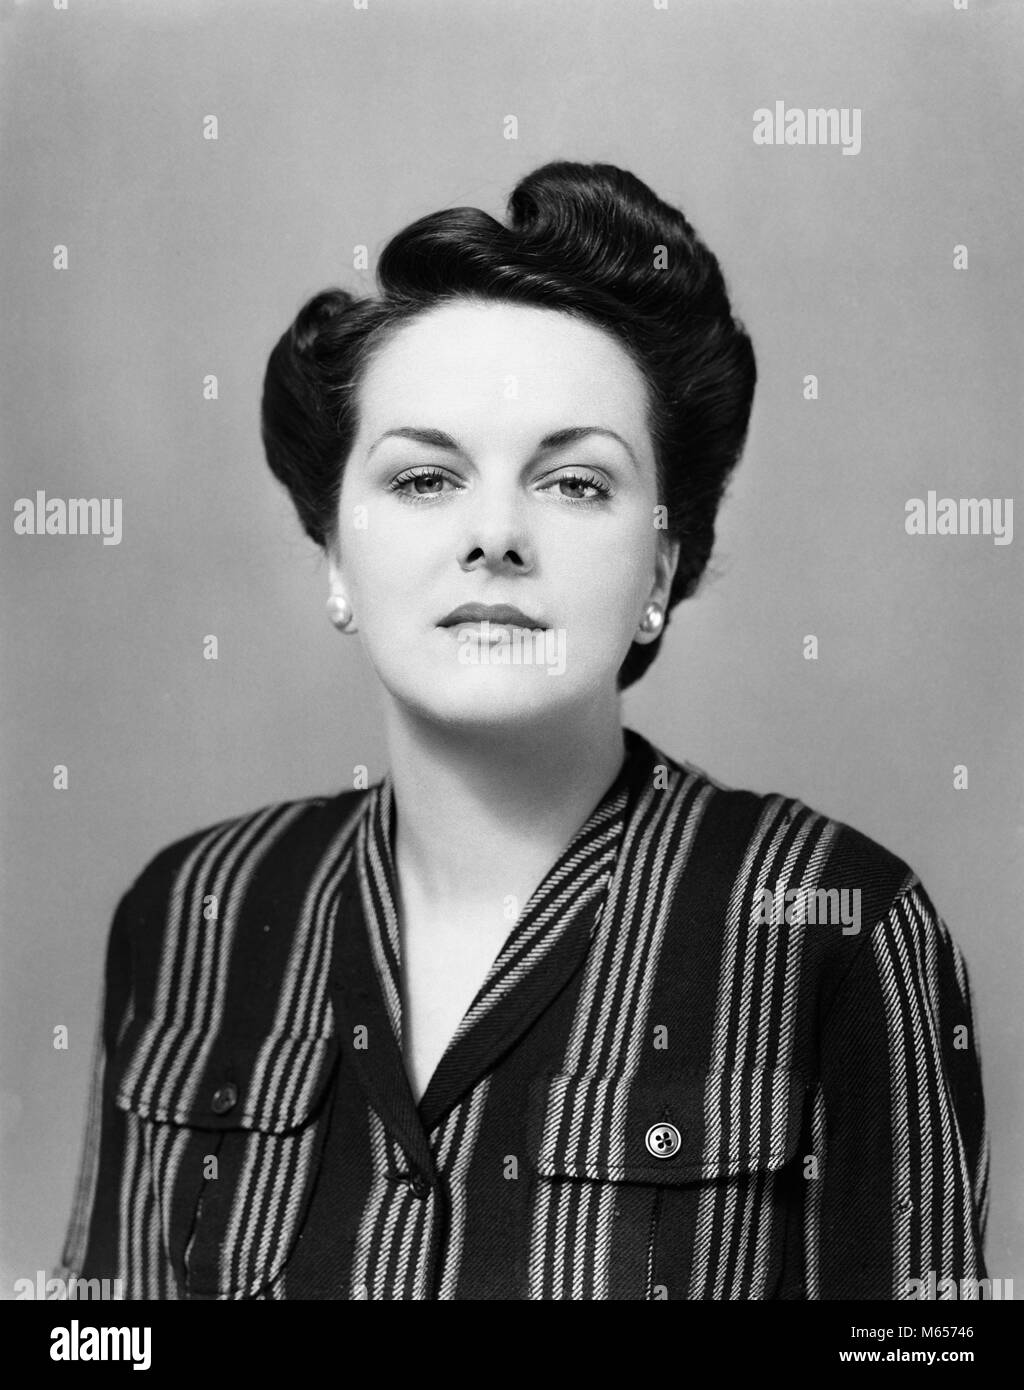 1940 Portrait brünette Frau gestreifte Bluse ernsten Gesichtsausdruck - g 881 HAR 001 HARS ZUGESCHNITTEN SMART CHIC MITTE NACH MITTE DER ERWACHSENEN FRAU B&W SCHWARZ UND WEISS DIREKTEN BLICK AUF KAMERA ALTMODISCHE PERSONEN SIEG ROLL Stockfoto